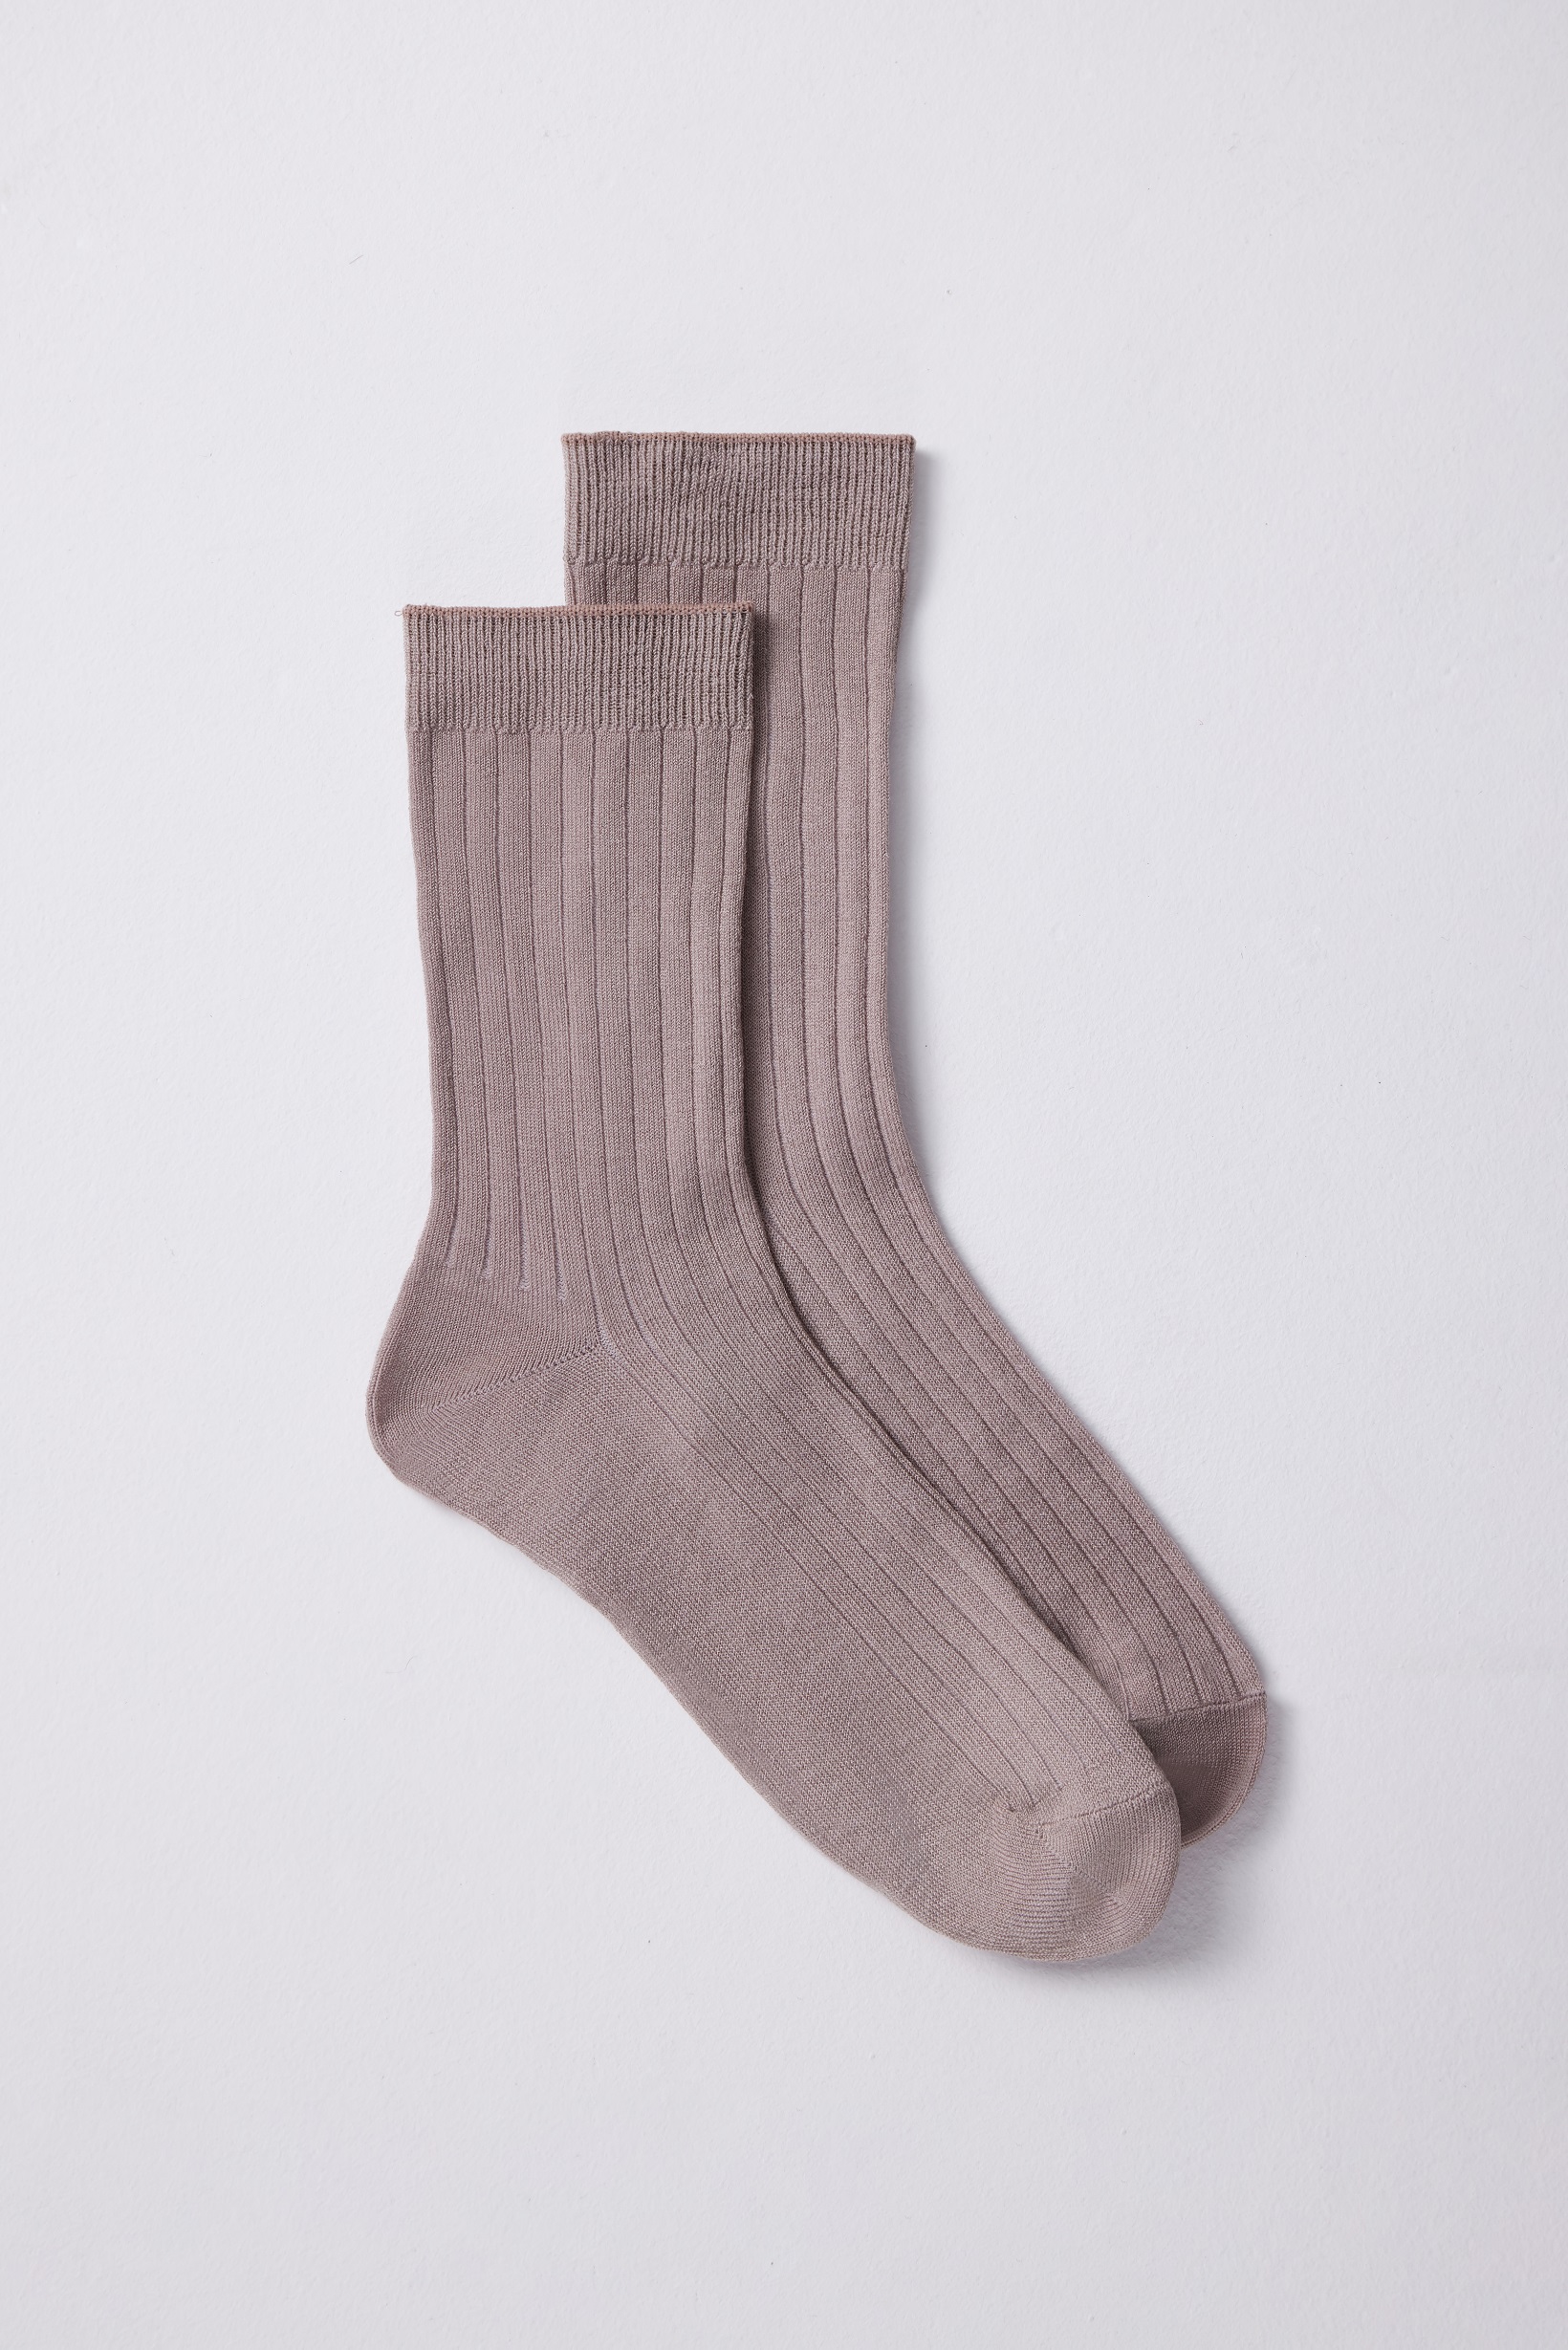 Хлопковые носки классической длины (кофе с молоком)